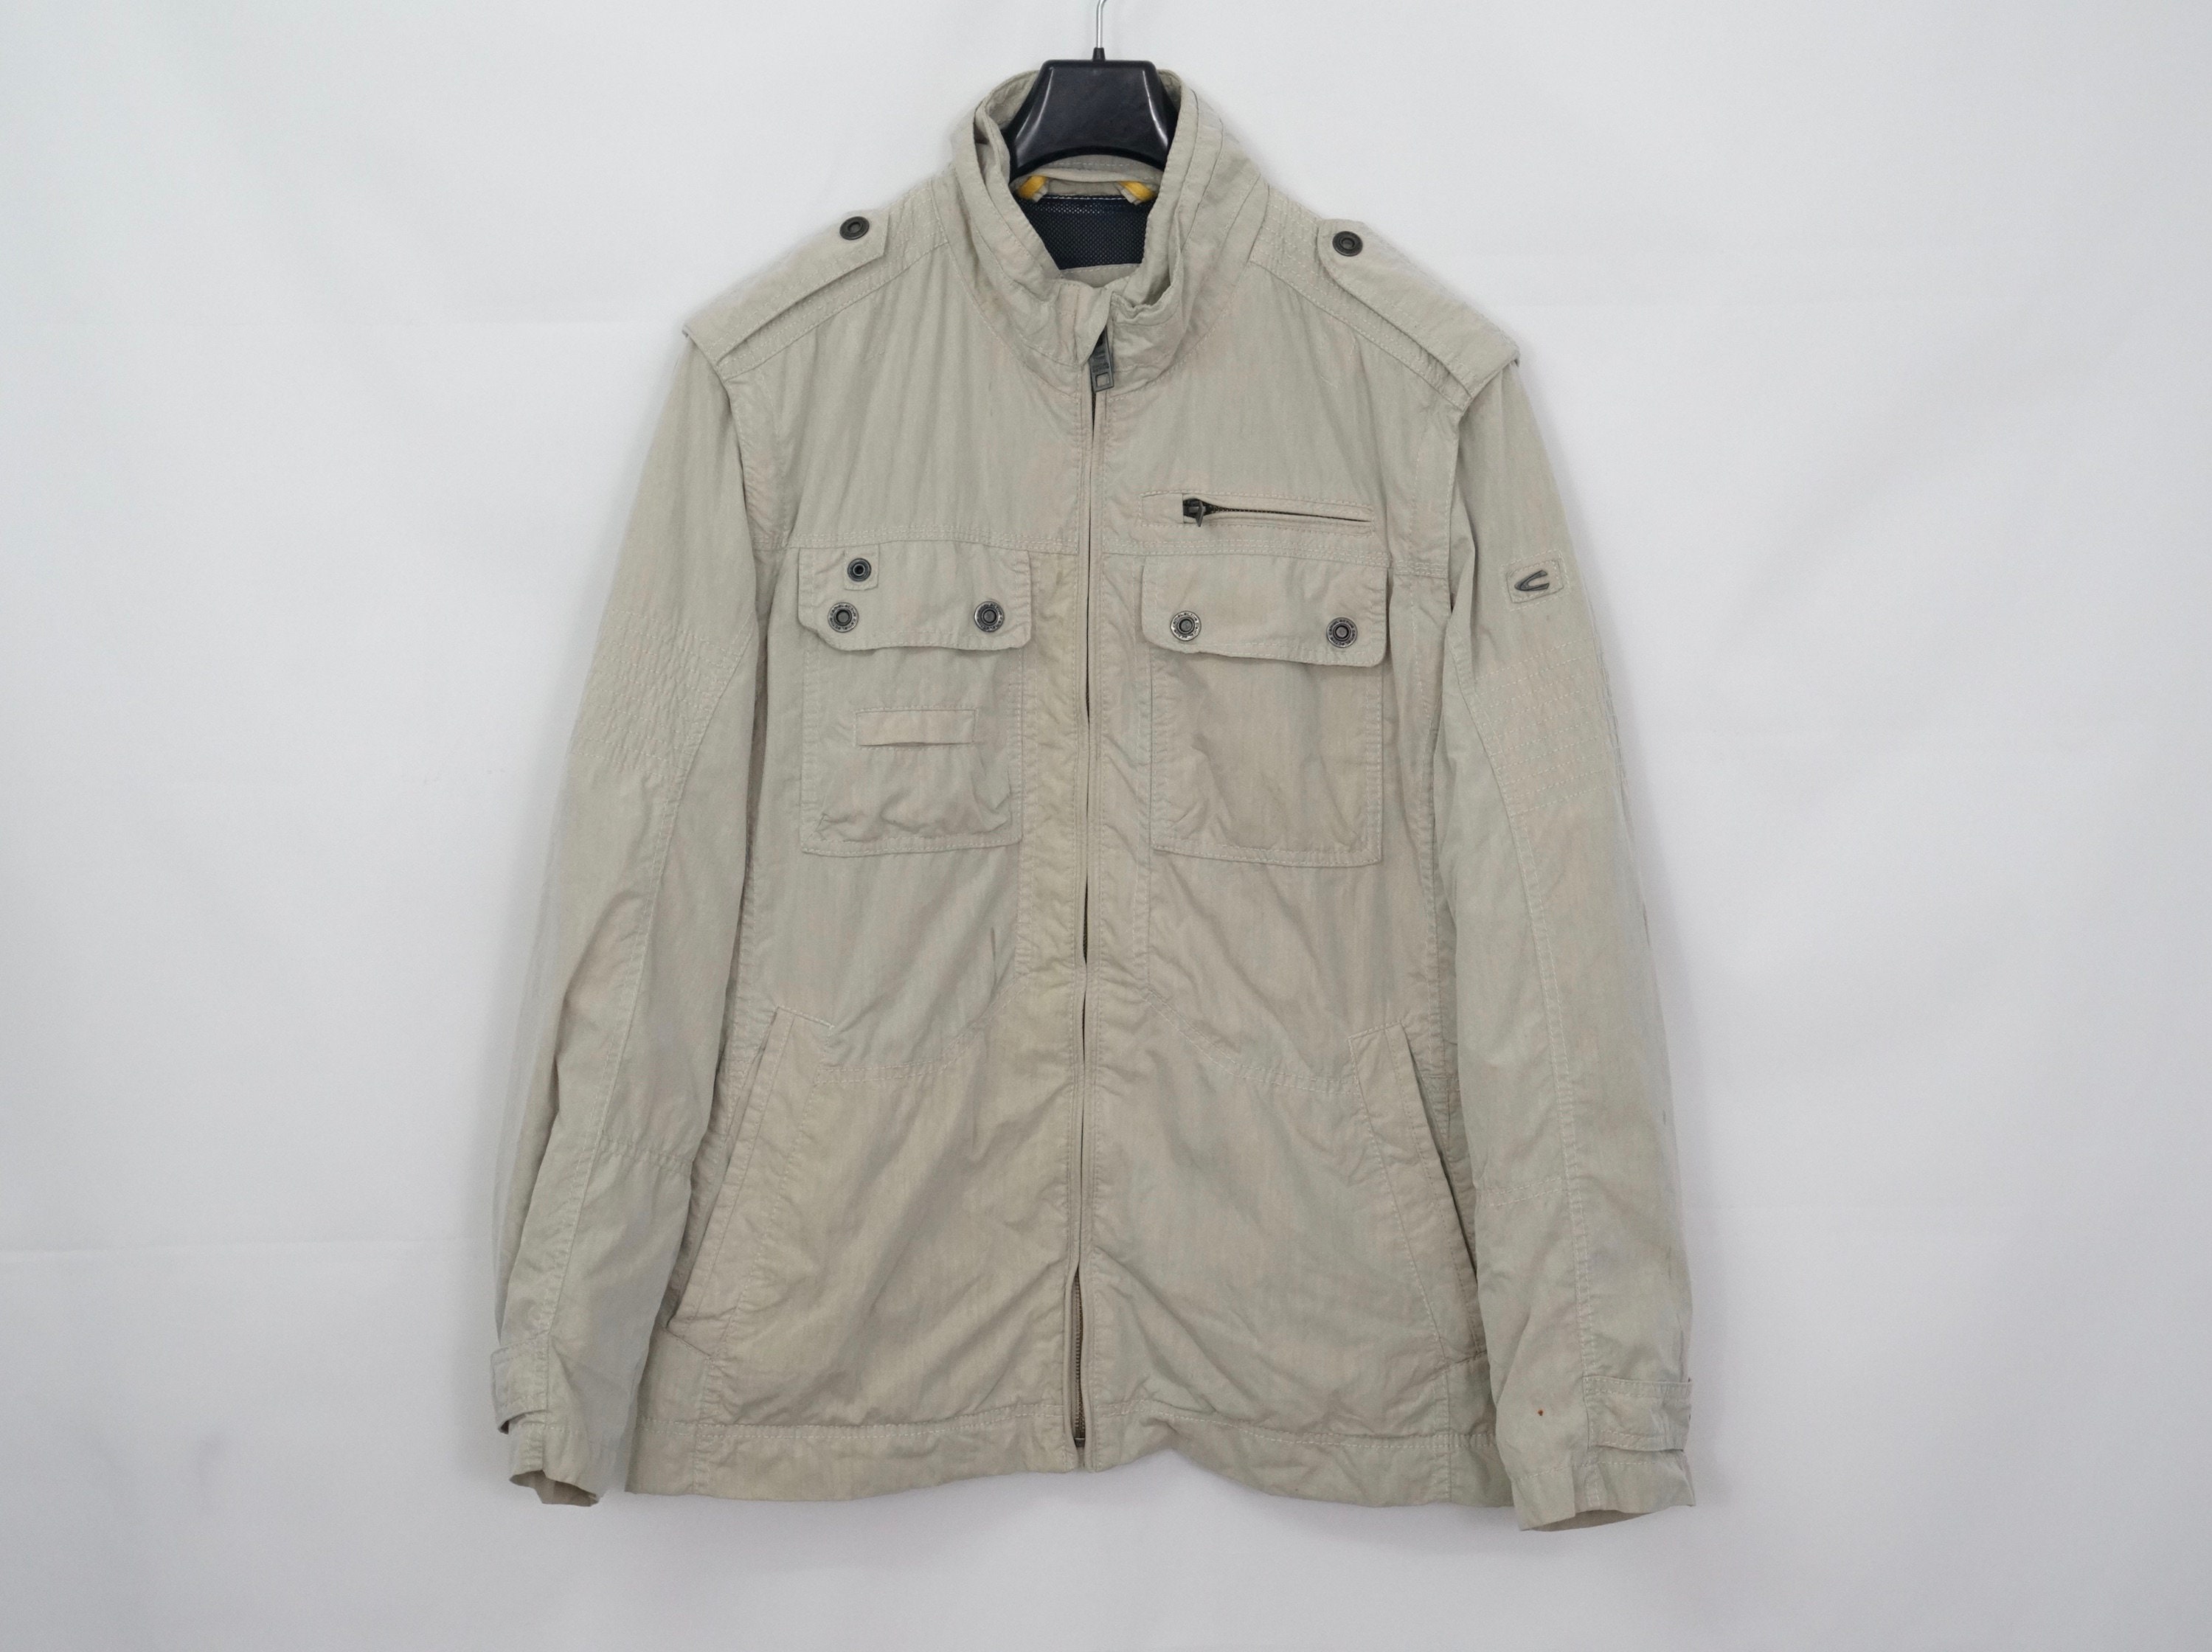 Camel Active Men's Jacket Size 52 / L Functional Jacket Jacket & Vest in  One - Etsy